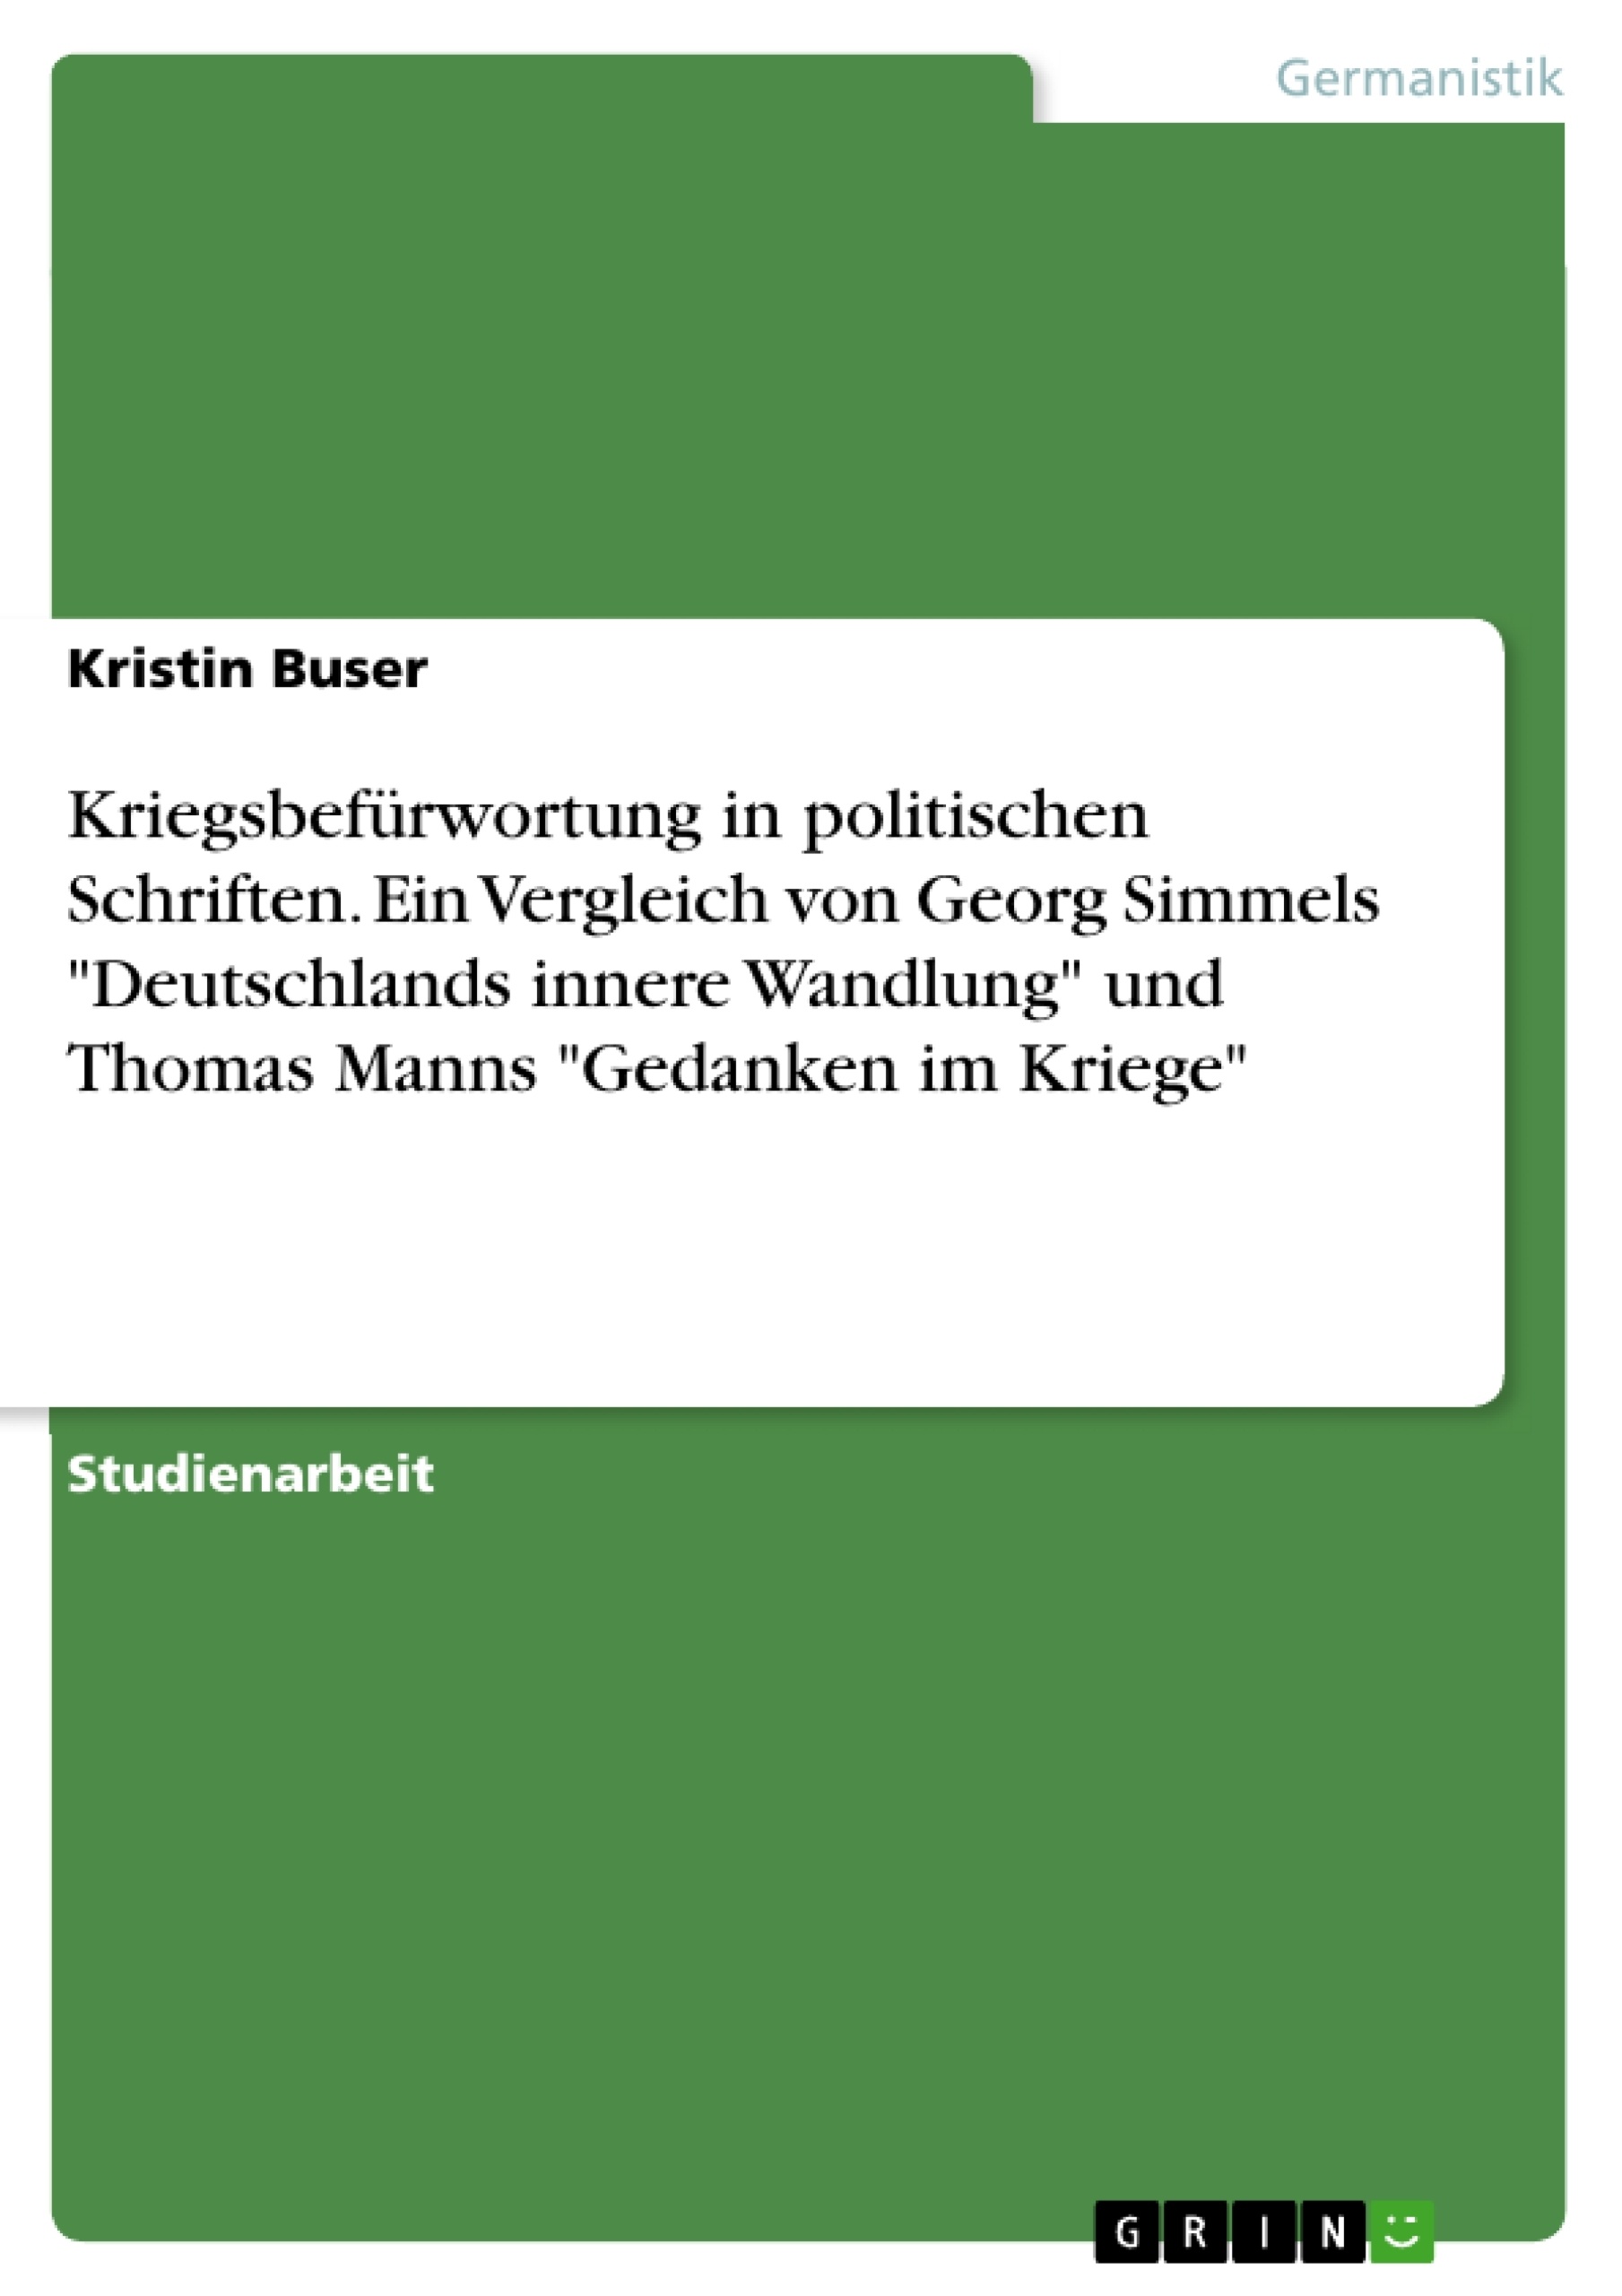 Title: Kriegsbefürwortung in politischen Schriften. Ein Vergleich von Georg Simmels "Deutschlands innere Wandlung" und Thomas Manns "Gedanken im Kriege"